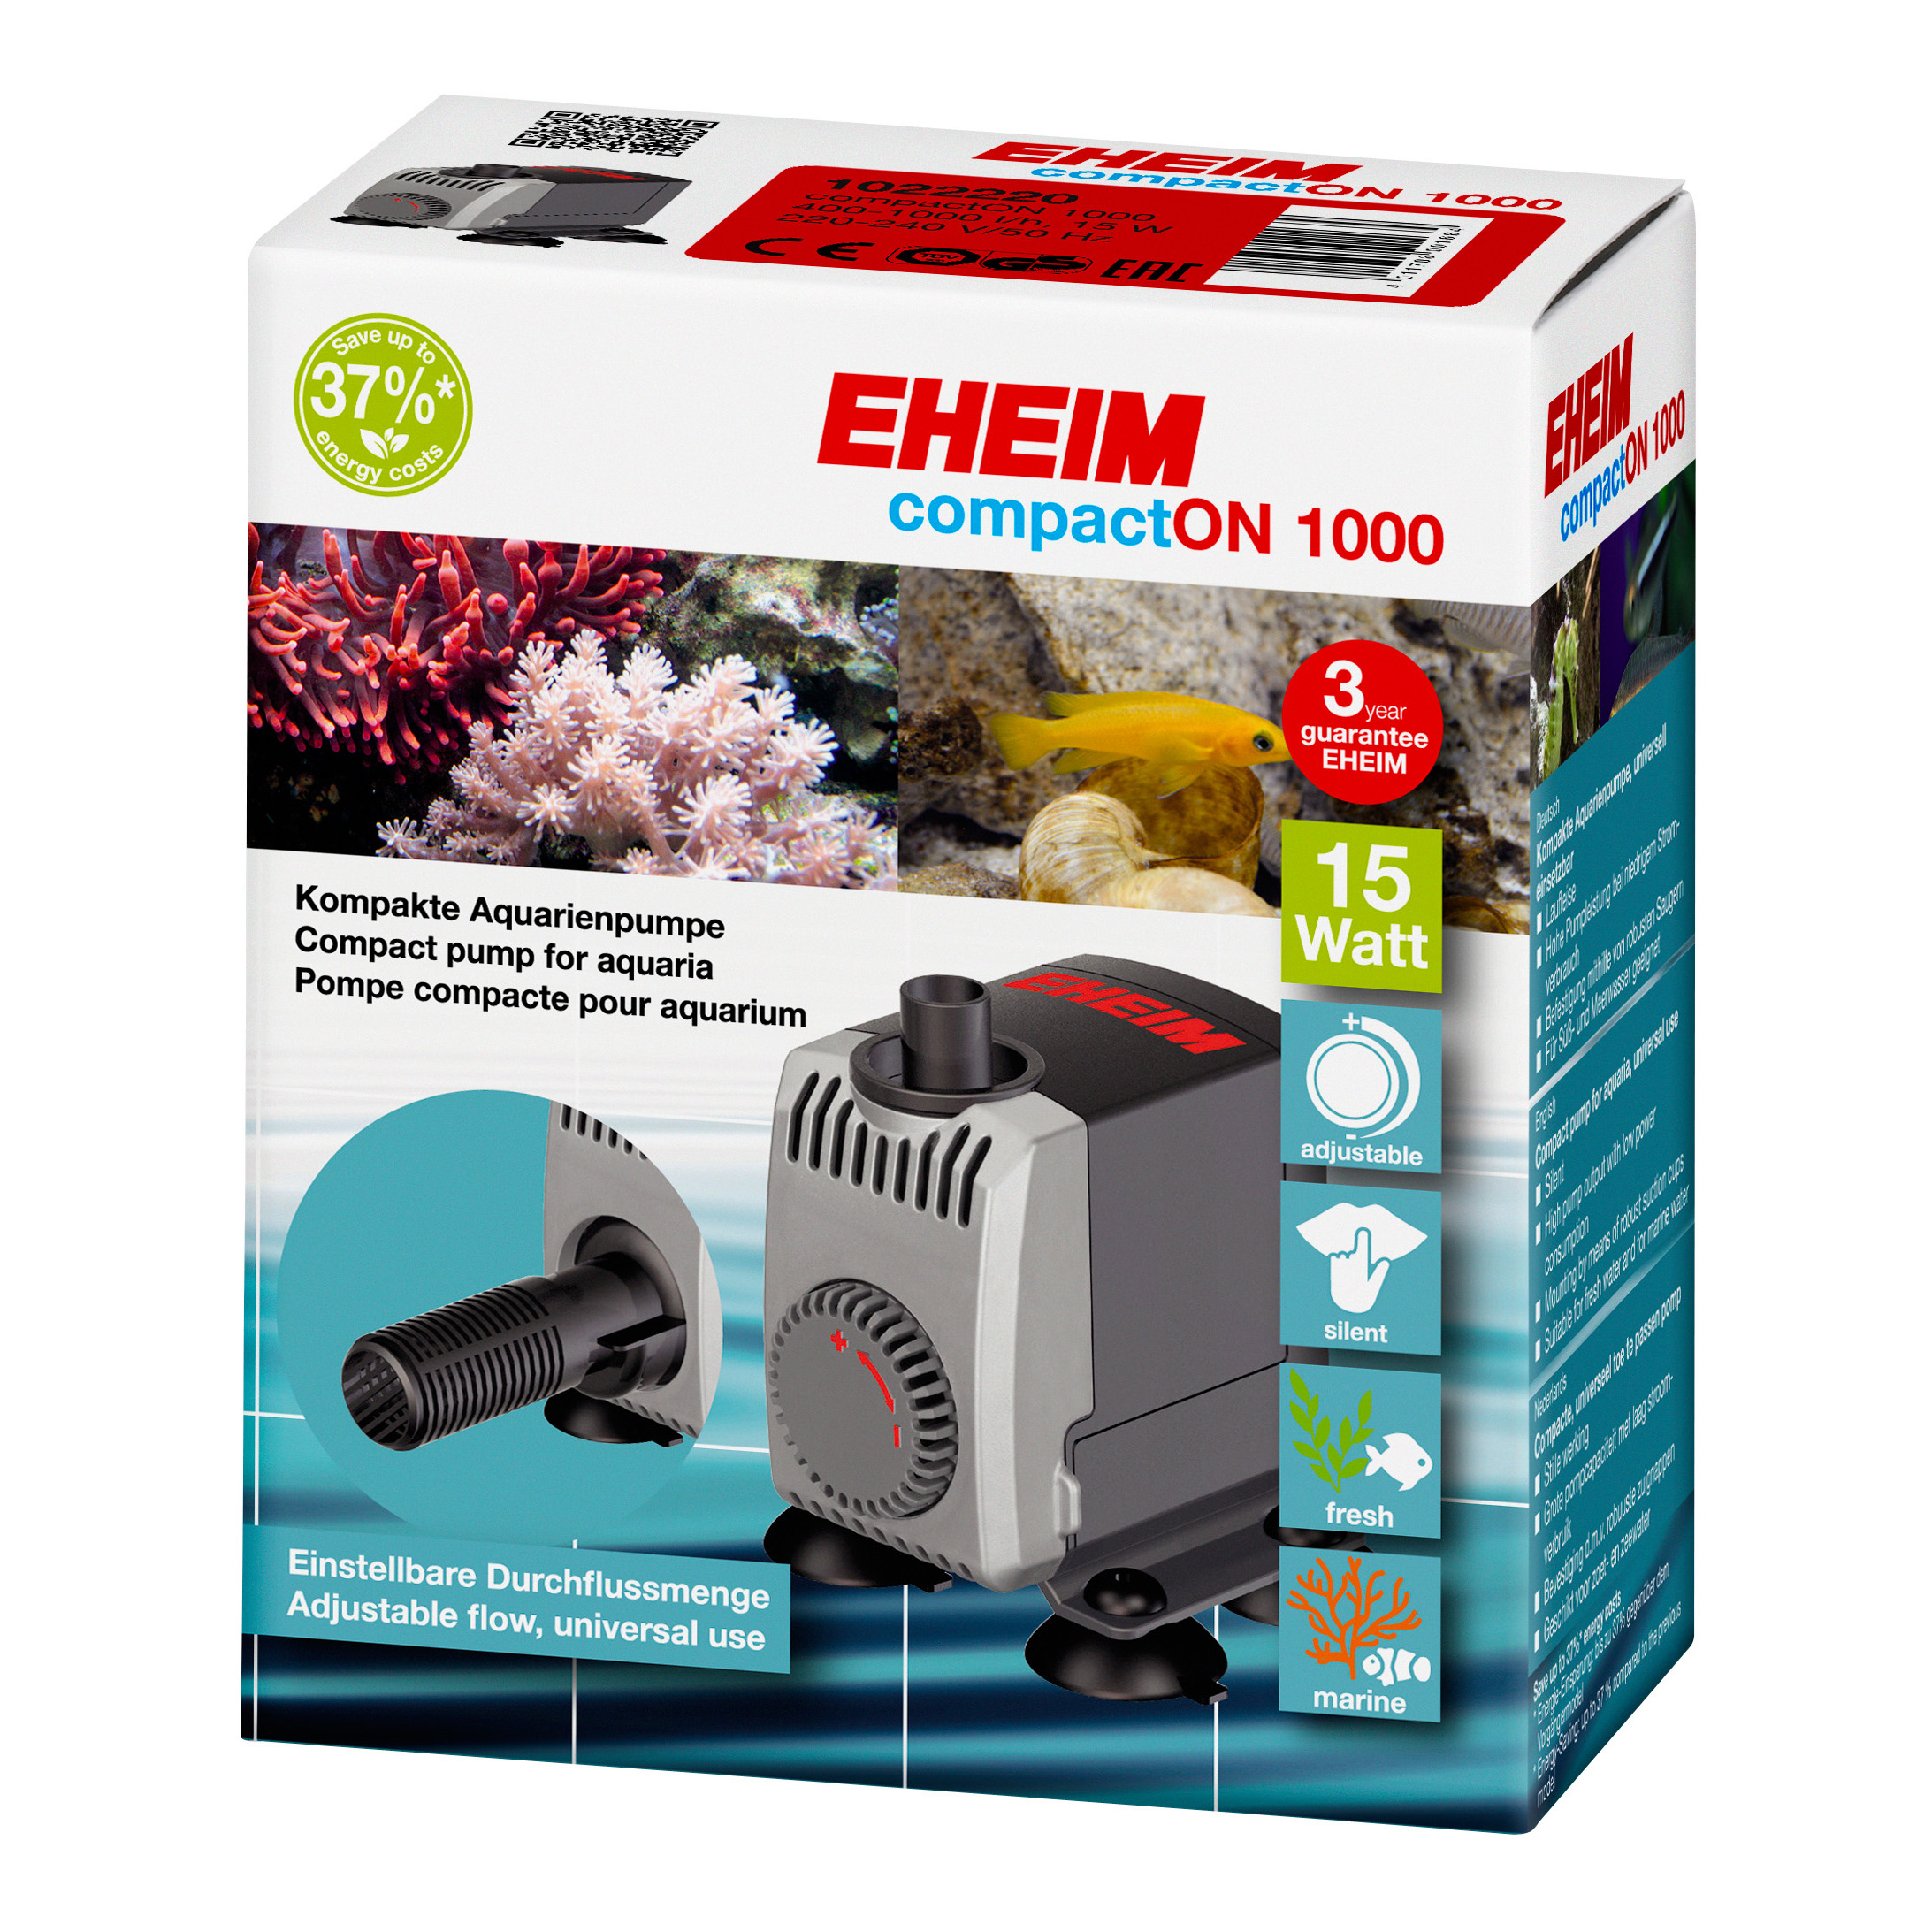 Pompe pour aquarium EHEIM Compact ON 2100 - 1400 à 2100 L/H